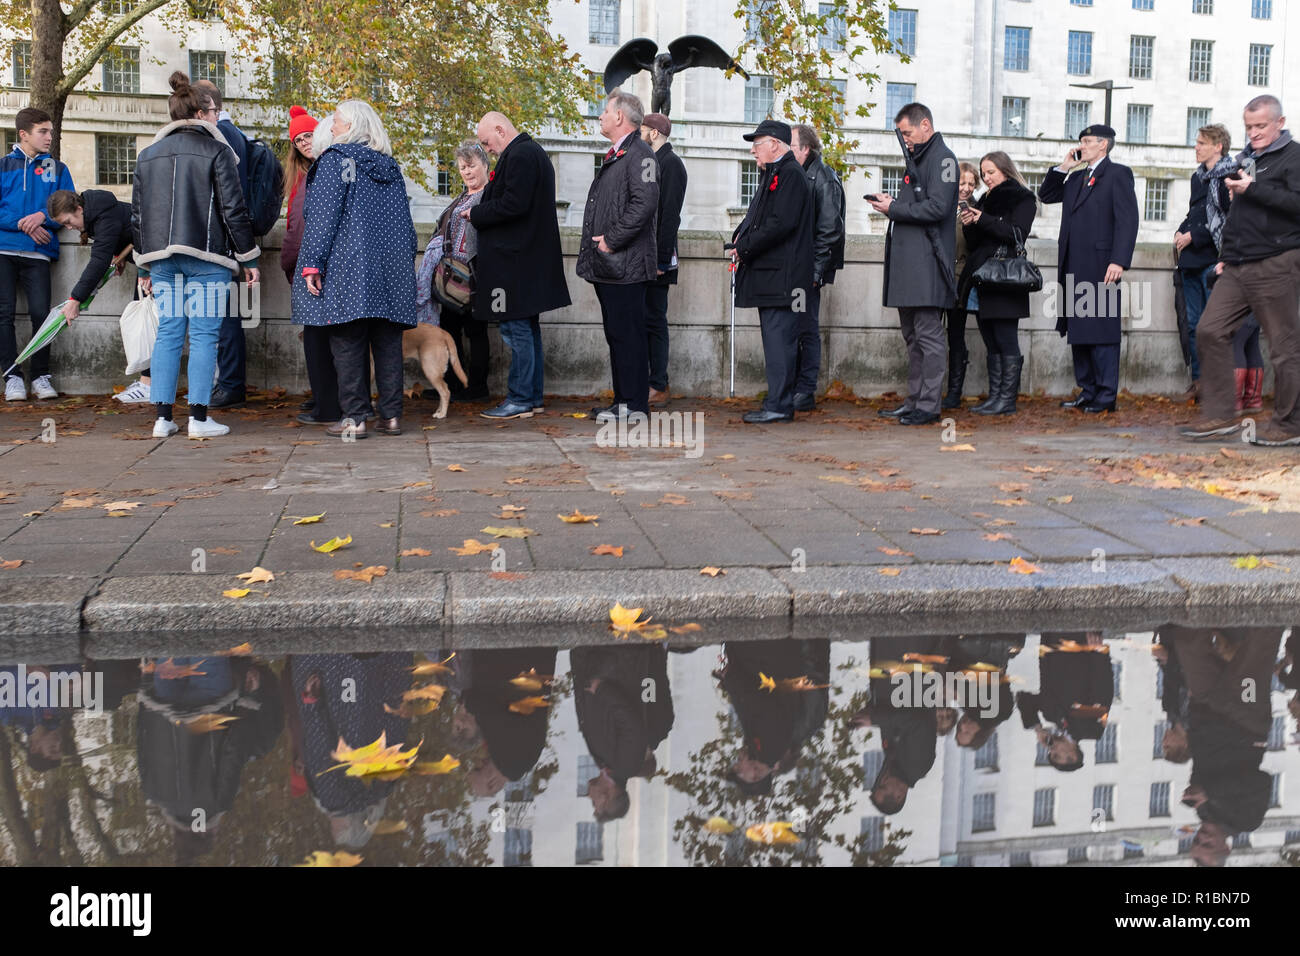 London UK, 11 Novembre 2018 : de longues files d'attente de personnes qui fréquentent le Service national du souvenir au monument de la guerre, à Londres, le Dimanche du souvenir. Crédit : à vue/Photographique Alamy Live News Banque D'Images